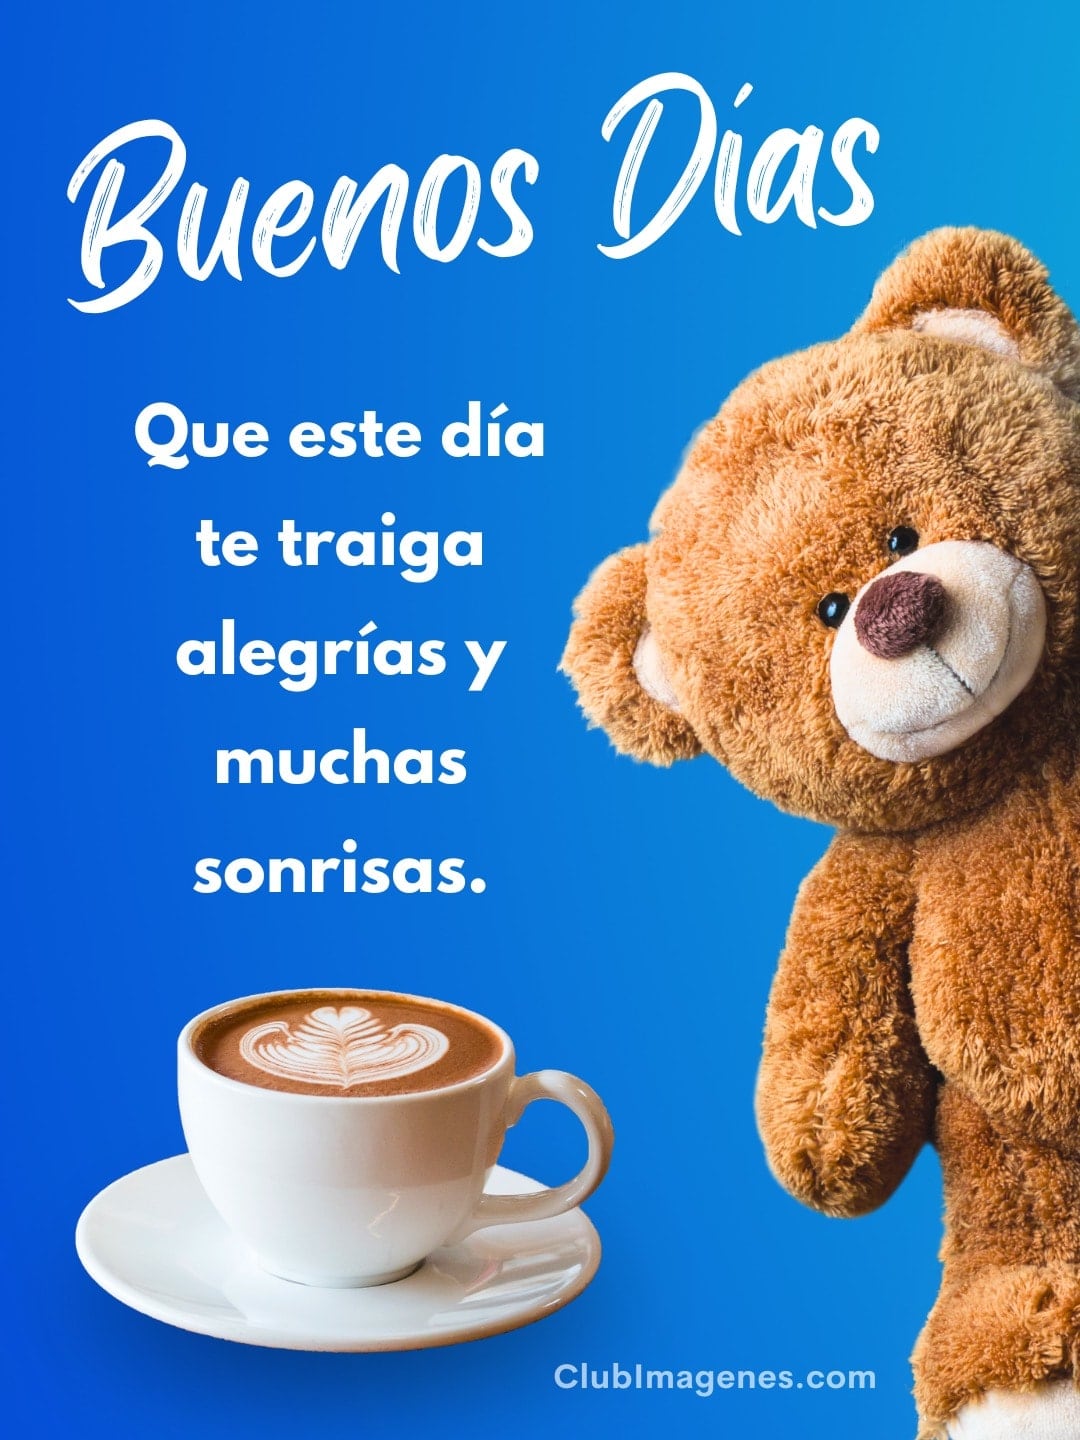 Un oso de peluche junto a una taza de café con latte art, sobre fondo azul y un mensaje deseando un buen día